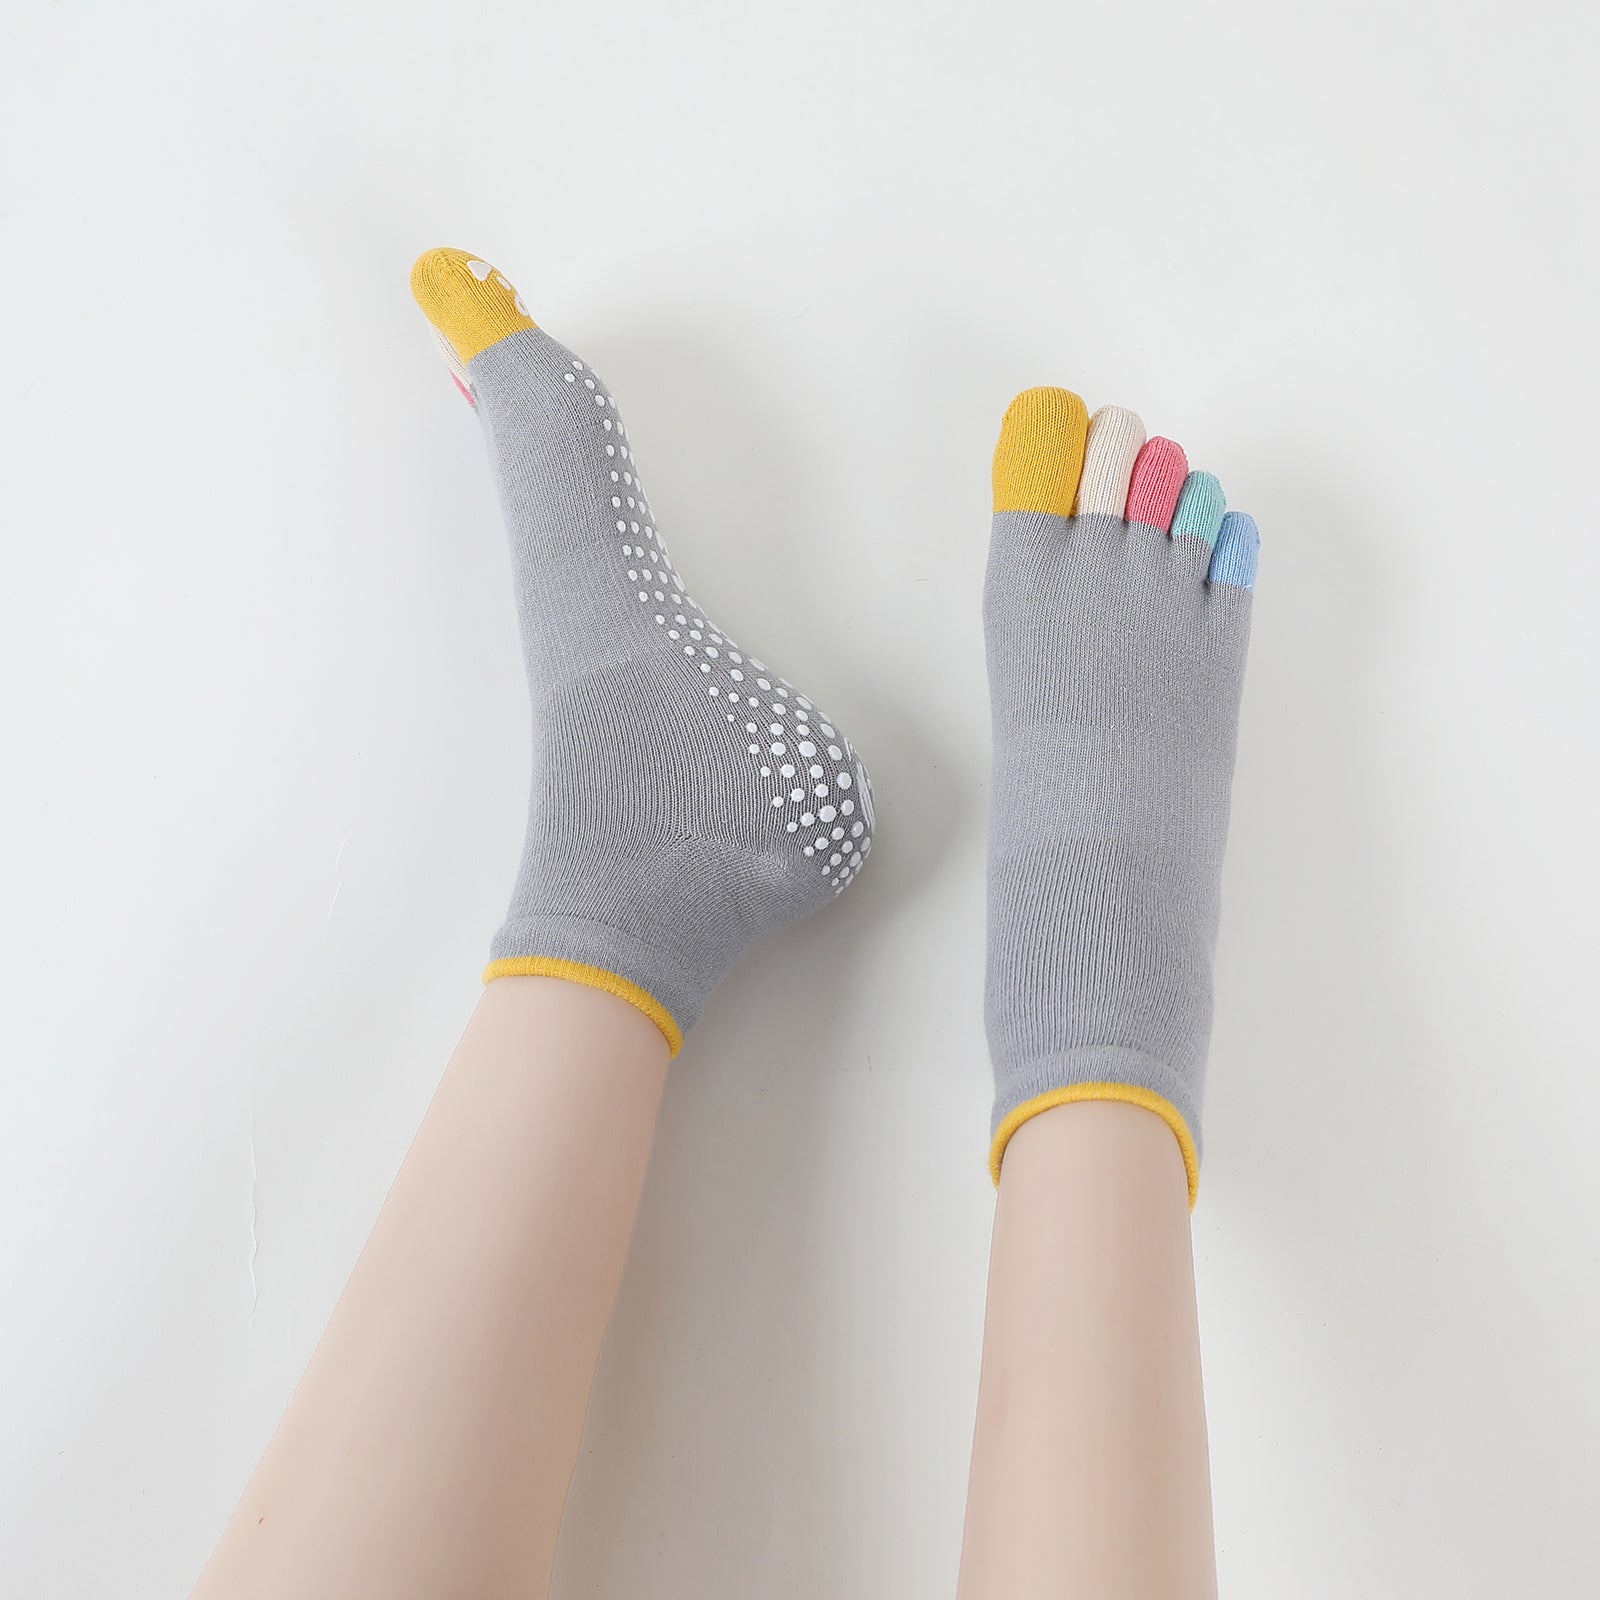 Artfasion Yoga Socks Women Non Slip Grip Socks Ankle Toe Socks for Ath